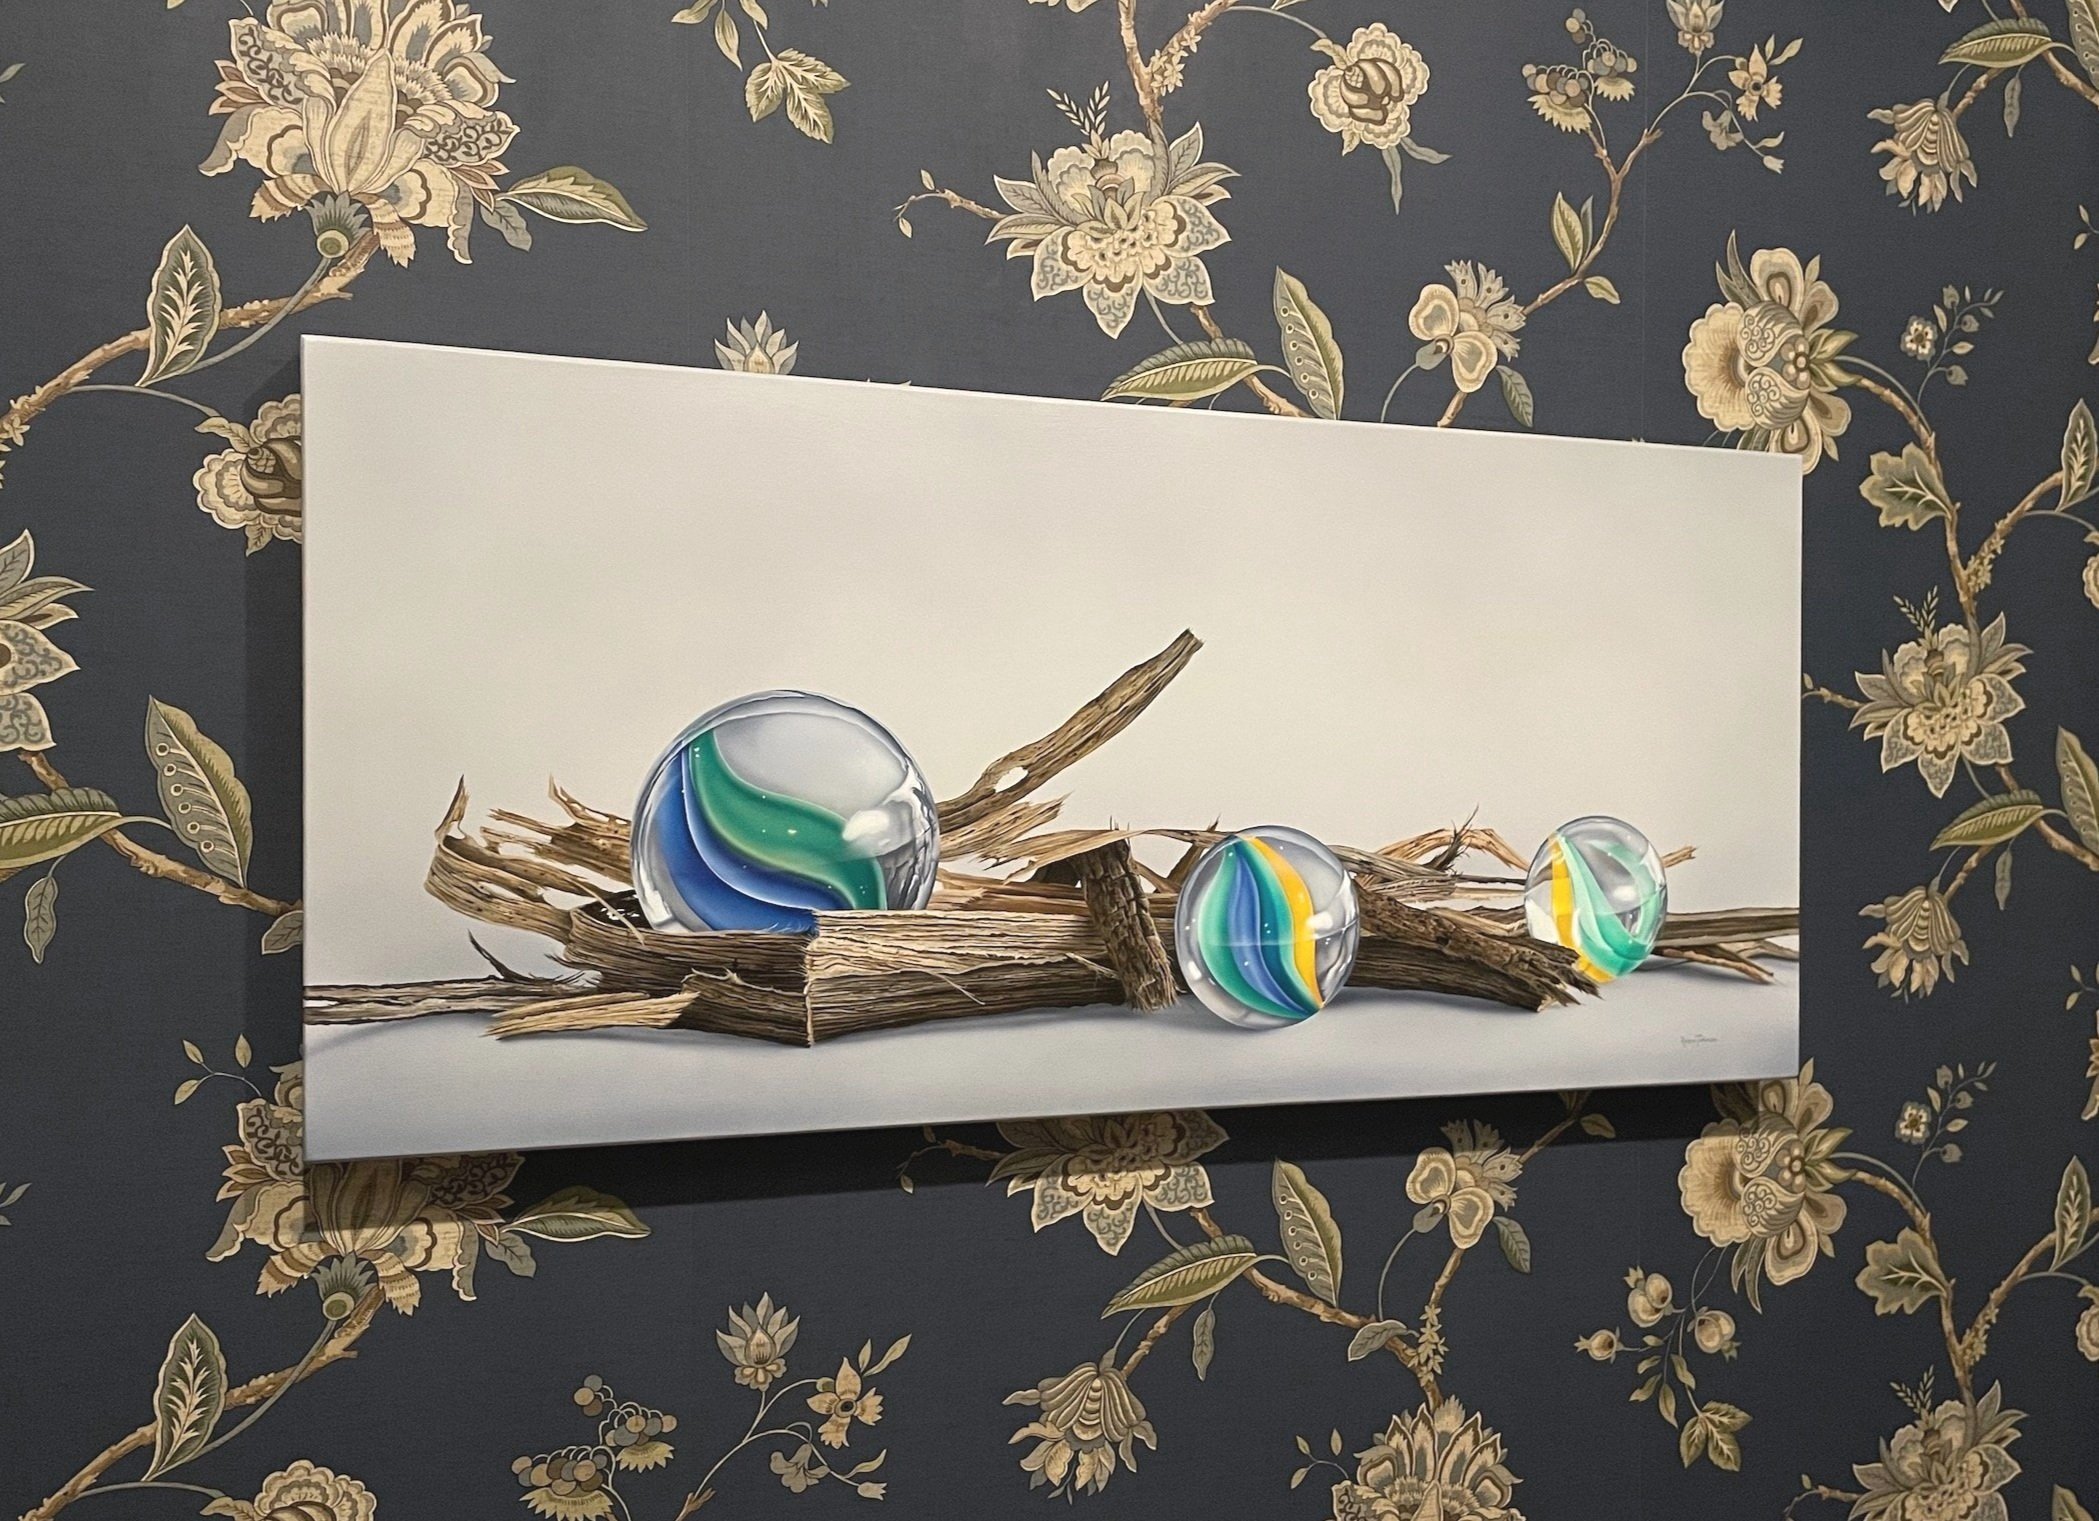    Fledglings  , 18” x 40”, acrylic on wood panel, Robin Tucker 